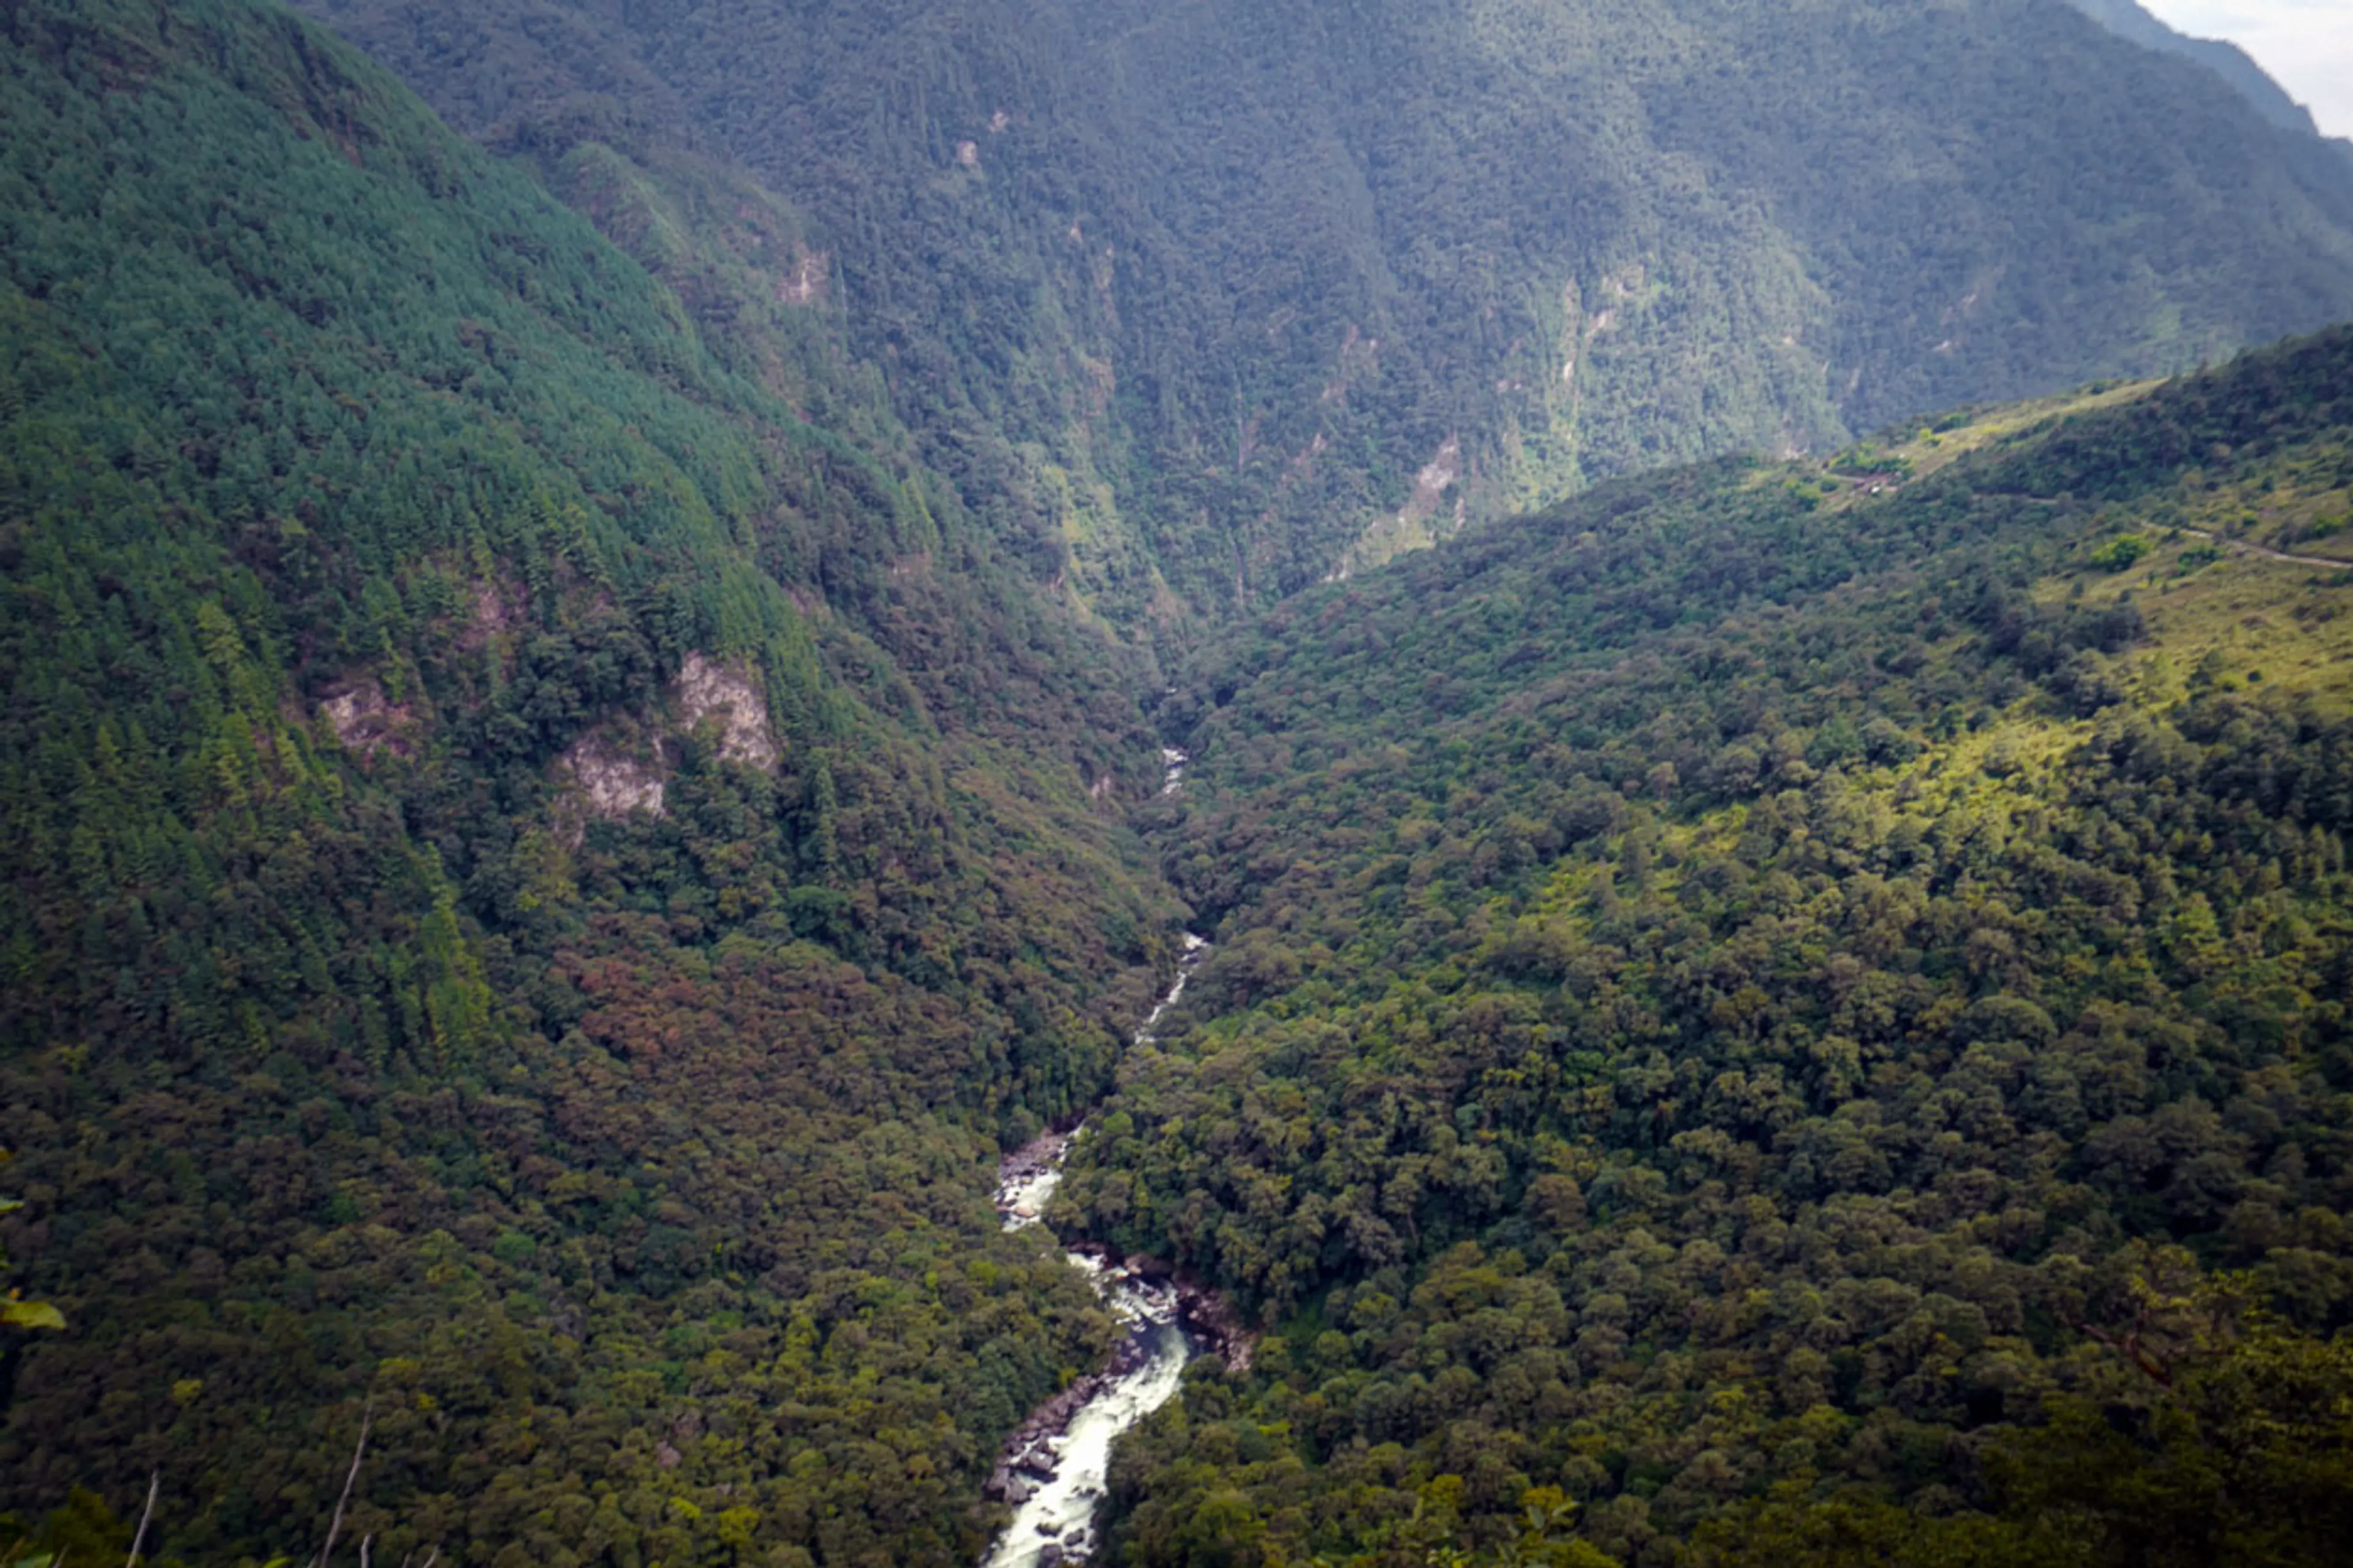 Pakhui Wildlife Sanctuary—kameng arunachal pradesh L1040072